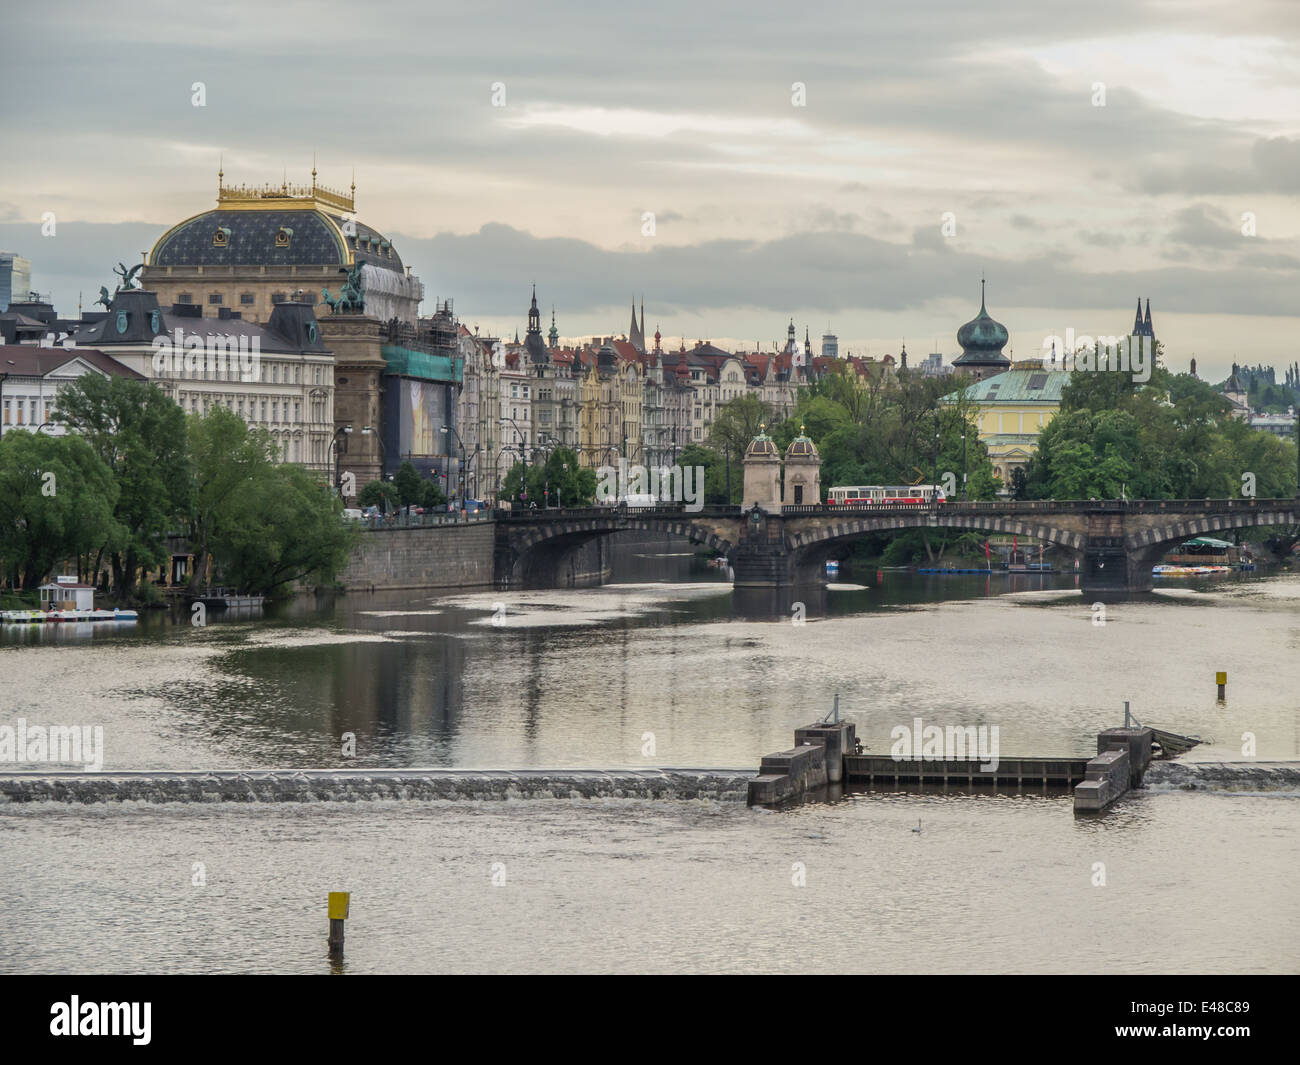 Benvenuti in Repubblica ceca - Praga foto di Sean Sprague Foto Stock